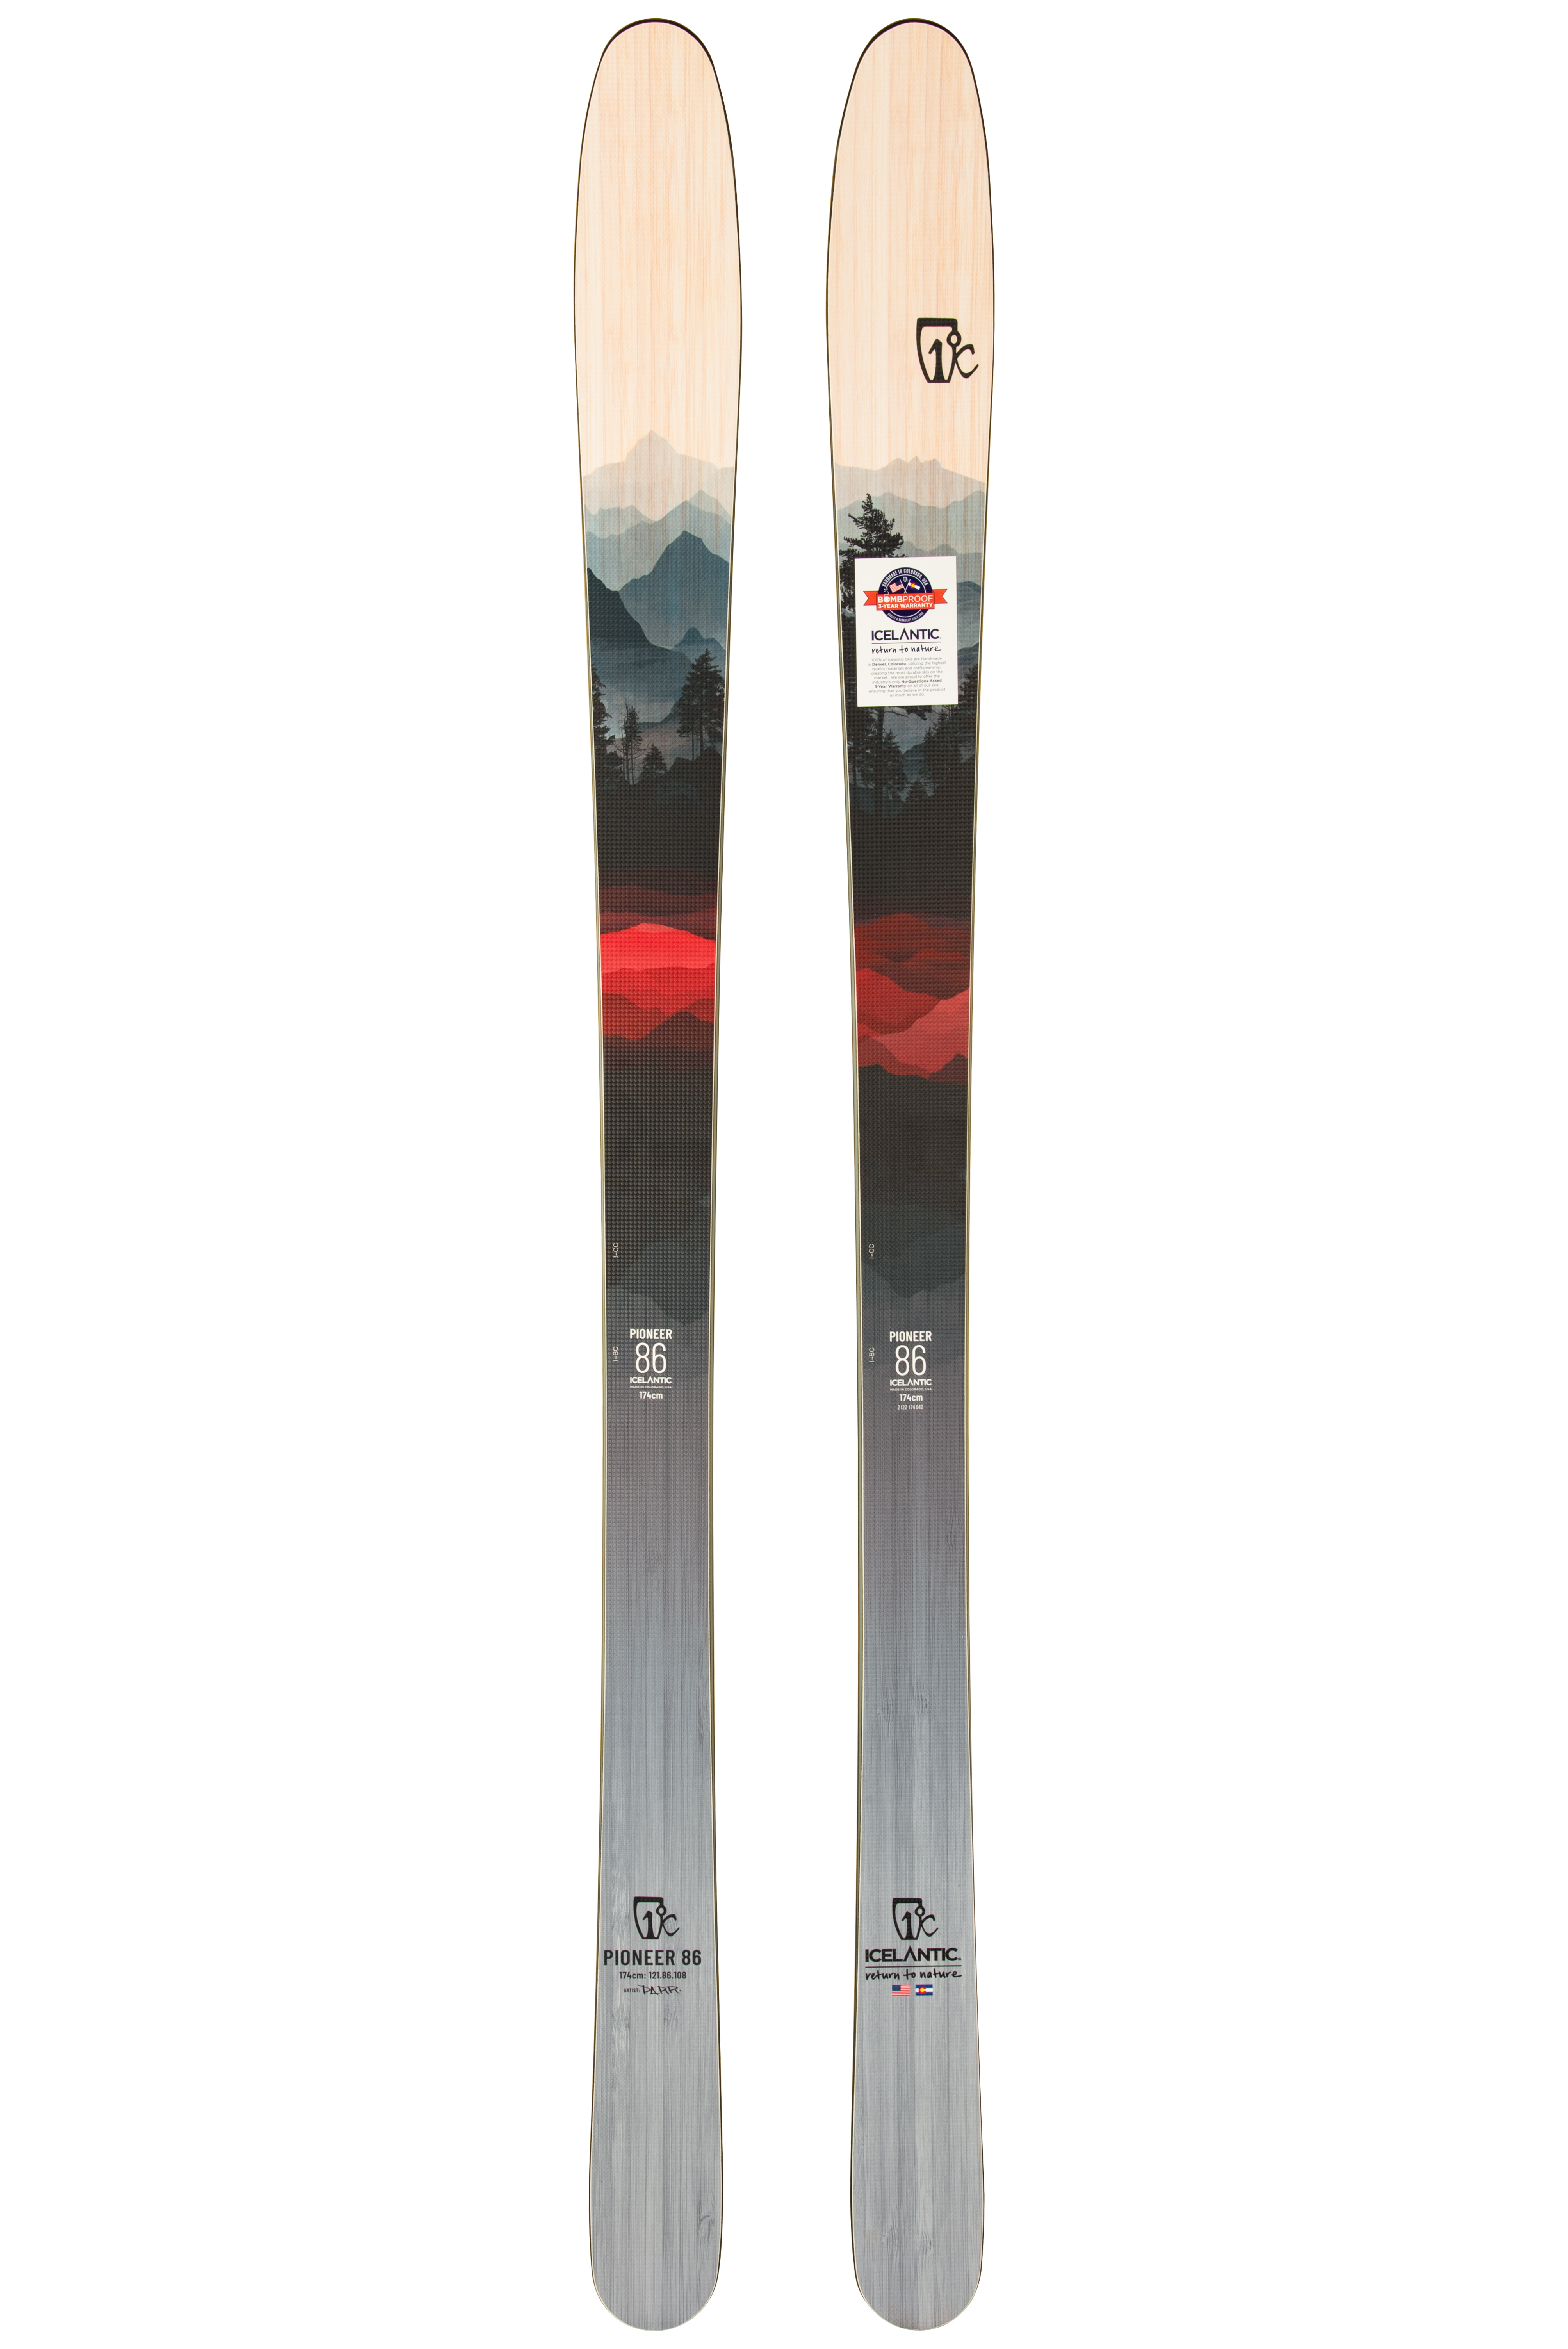 Ціна лижі для карвінгу Icelantic Pioneer 86 2021/2022 174cm в Києві